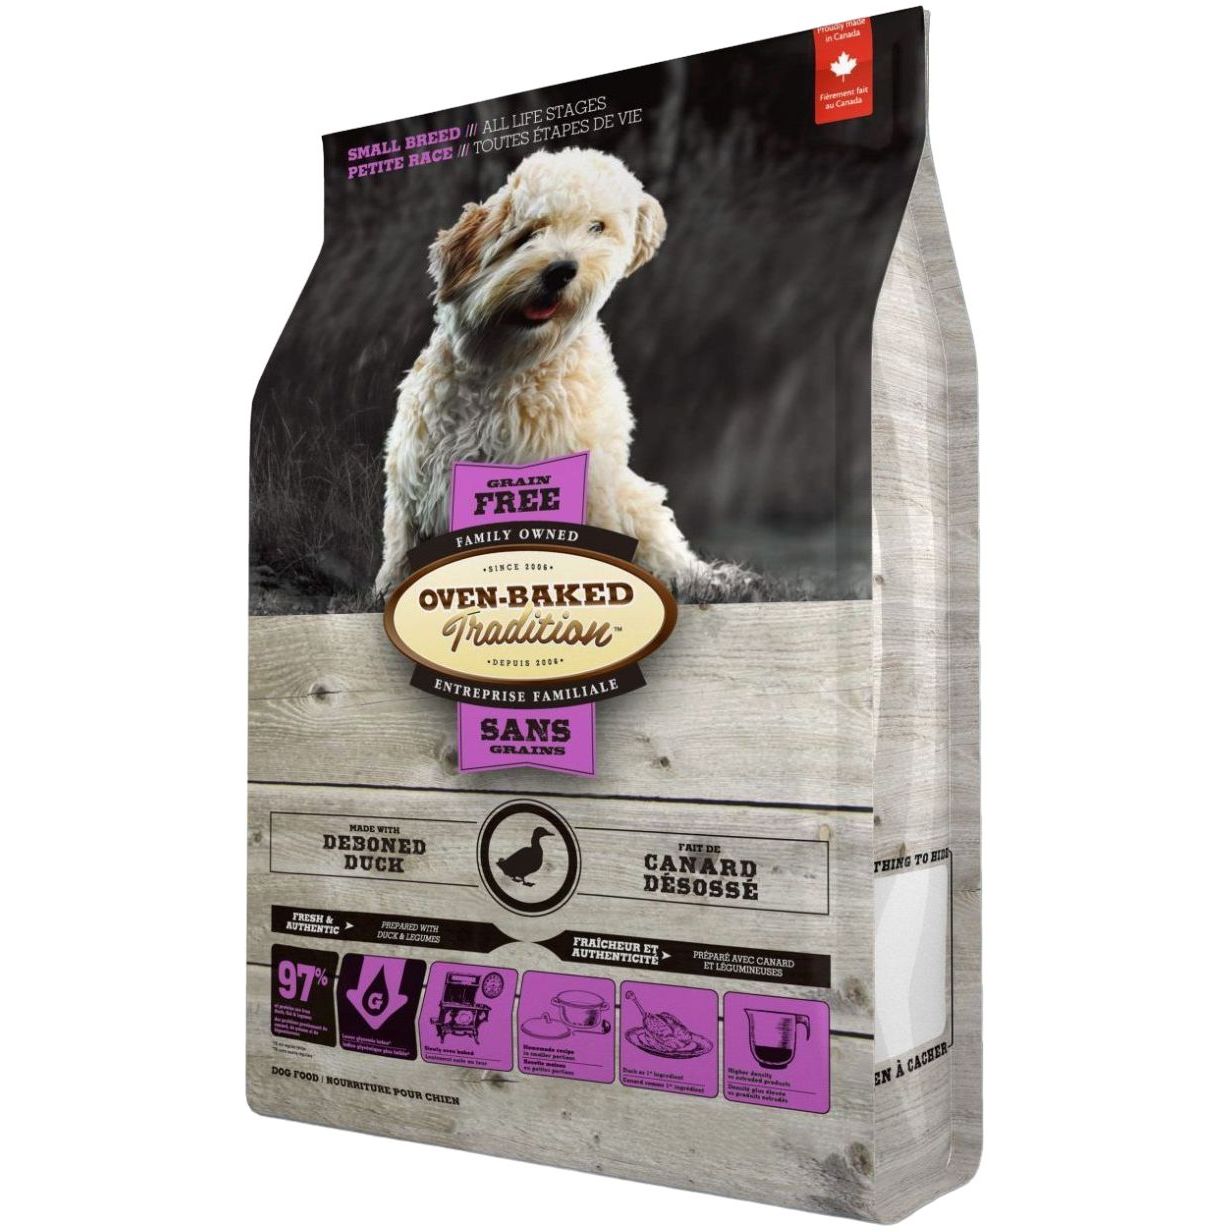 Сухий корм для собак малих порід Oven-Baked Tradition, беззерновий, зі свіжого м'яса качки, 2,27 кг - фото 1